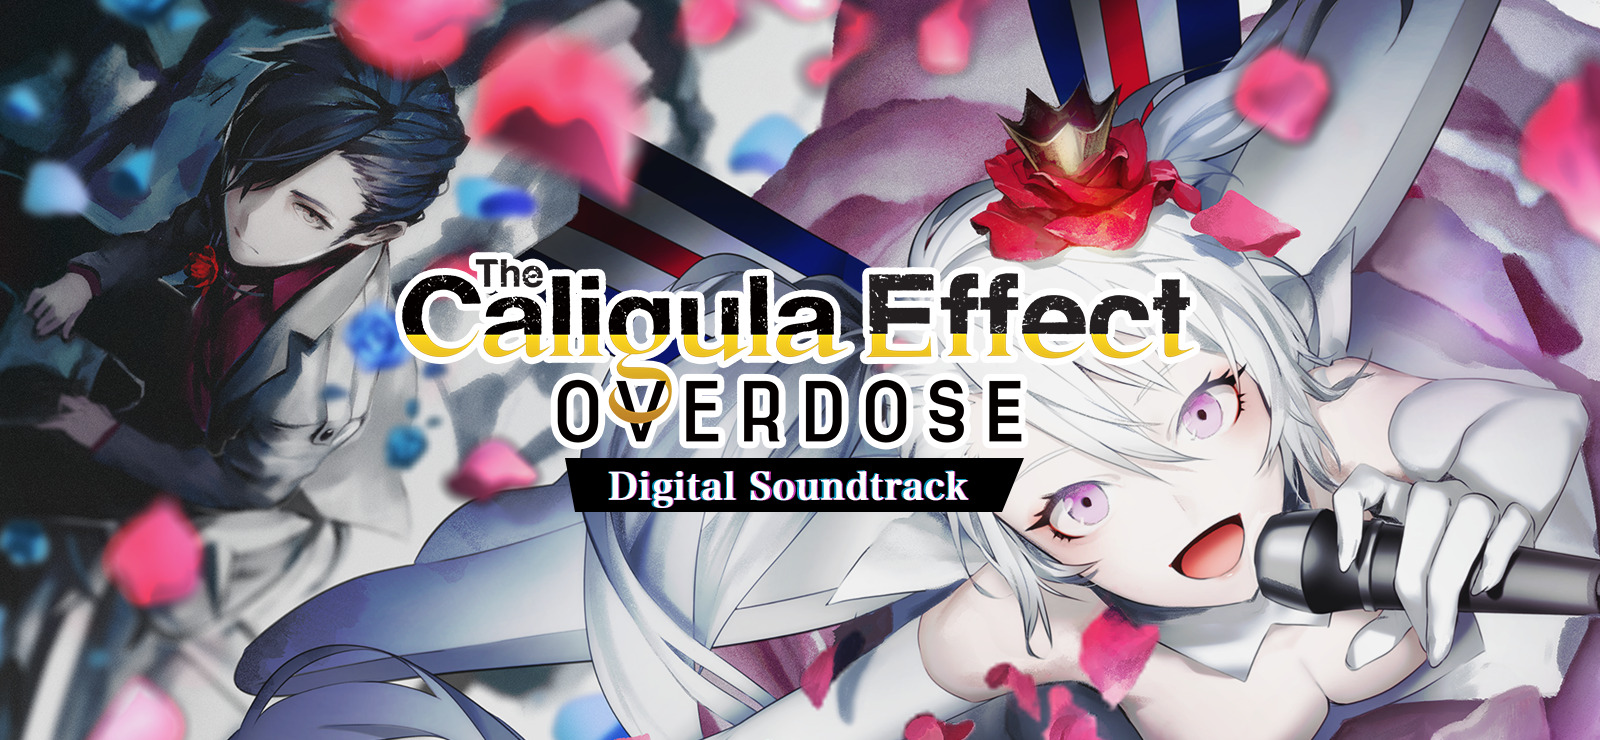 The Caligula Effect: Overdose - Digital Soundtrack DLC Steam CD Key USD 4.36